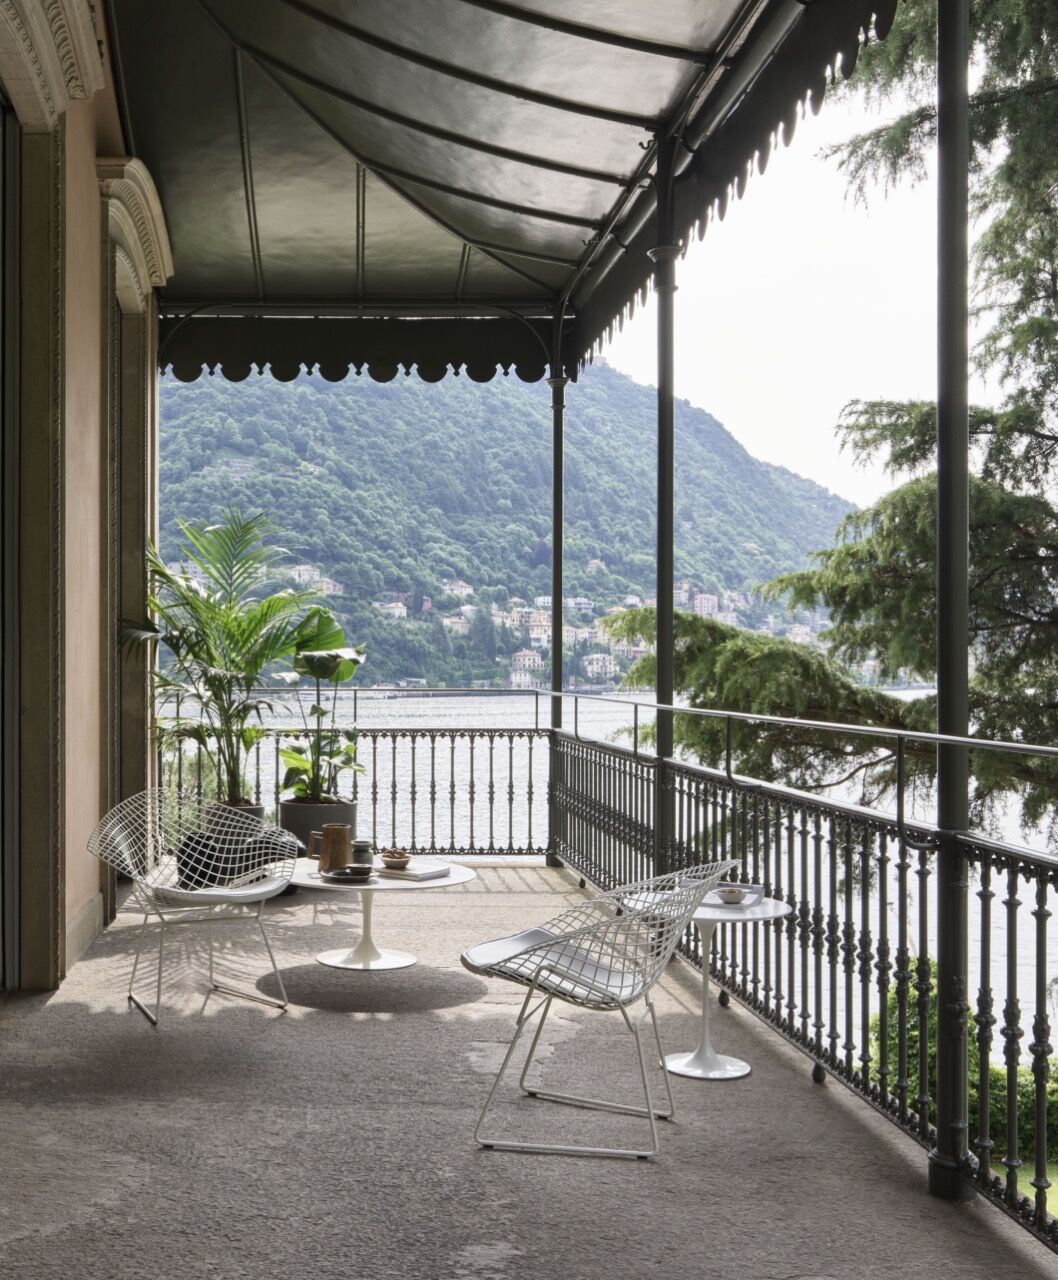 Bertoia Diamond Chair von Knoll International auf Balkon